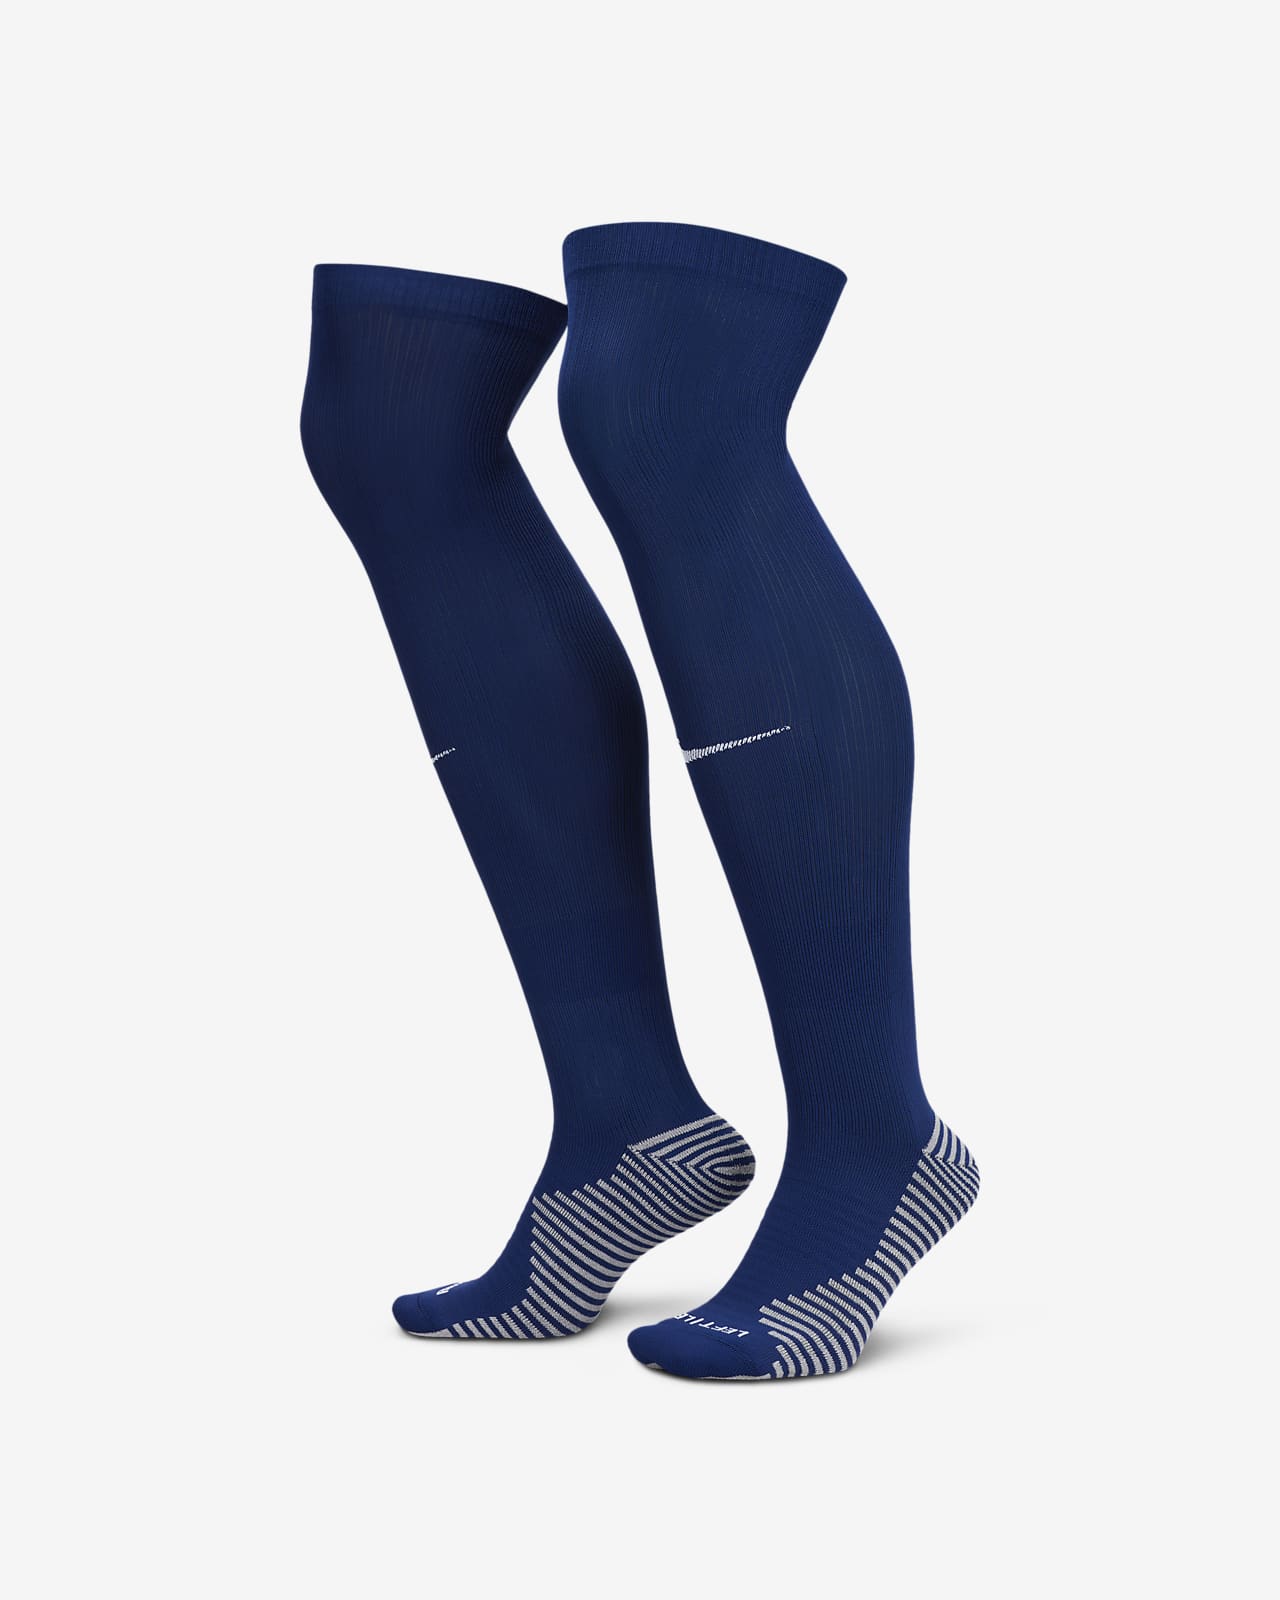 Εκτός έδρας ποδοσφαιρικές κάλτσες μέχρι το γόνατο Nike Dri-FIT Κάτω Χώρες Strike